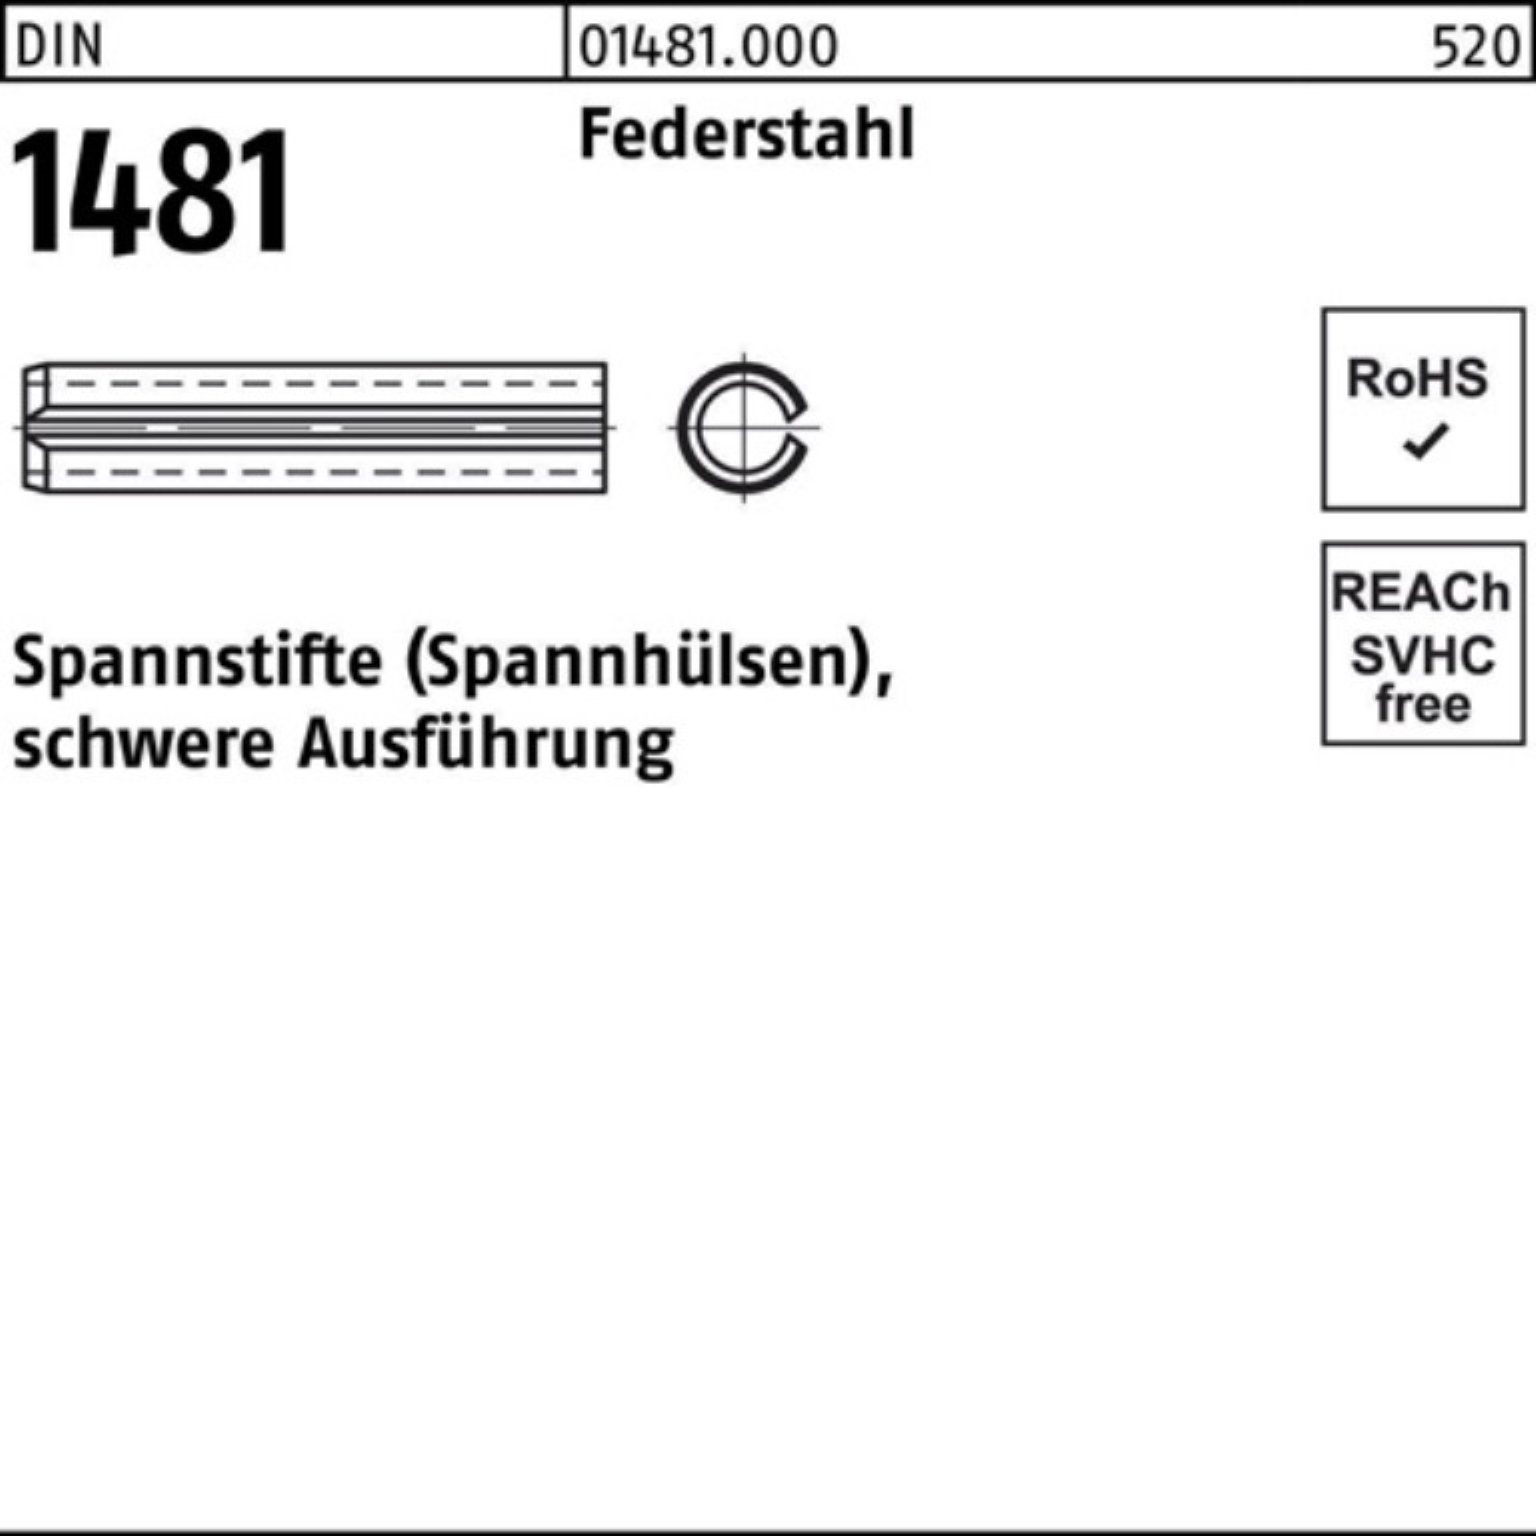 Reyher Spannstift 1000er Federstahl 1,5x Ausführung DIN Pack 1481 10 schwere Spannstift